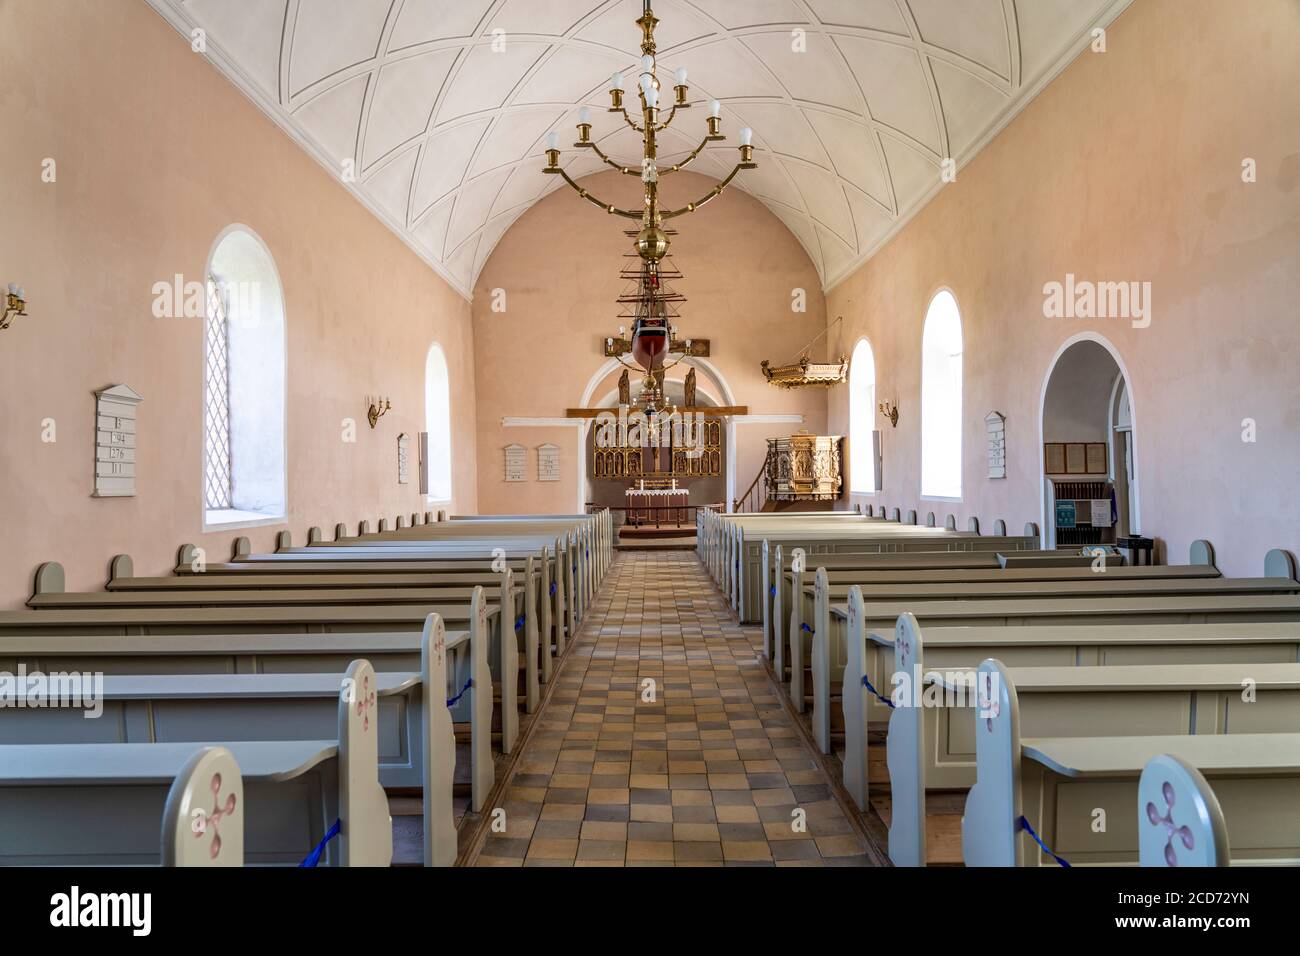 Innenraum der Kirche von Lindelse, Insel Langeland, Dänemark, Europa |   Lindelse church interior,  Langeland island, Denmark, Europe Stock Photo